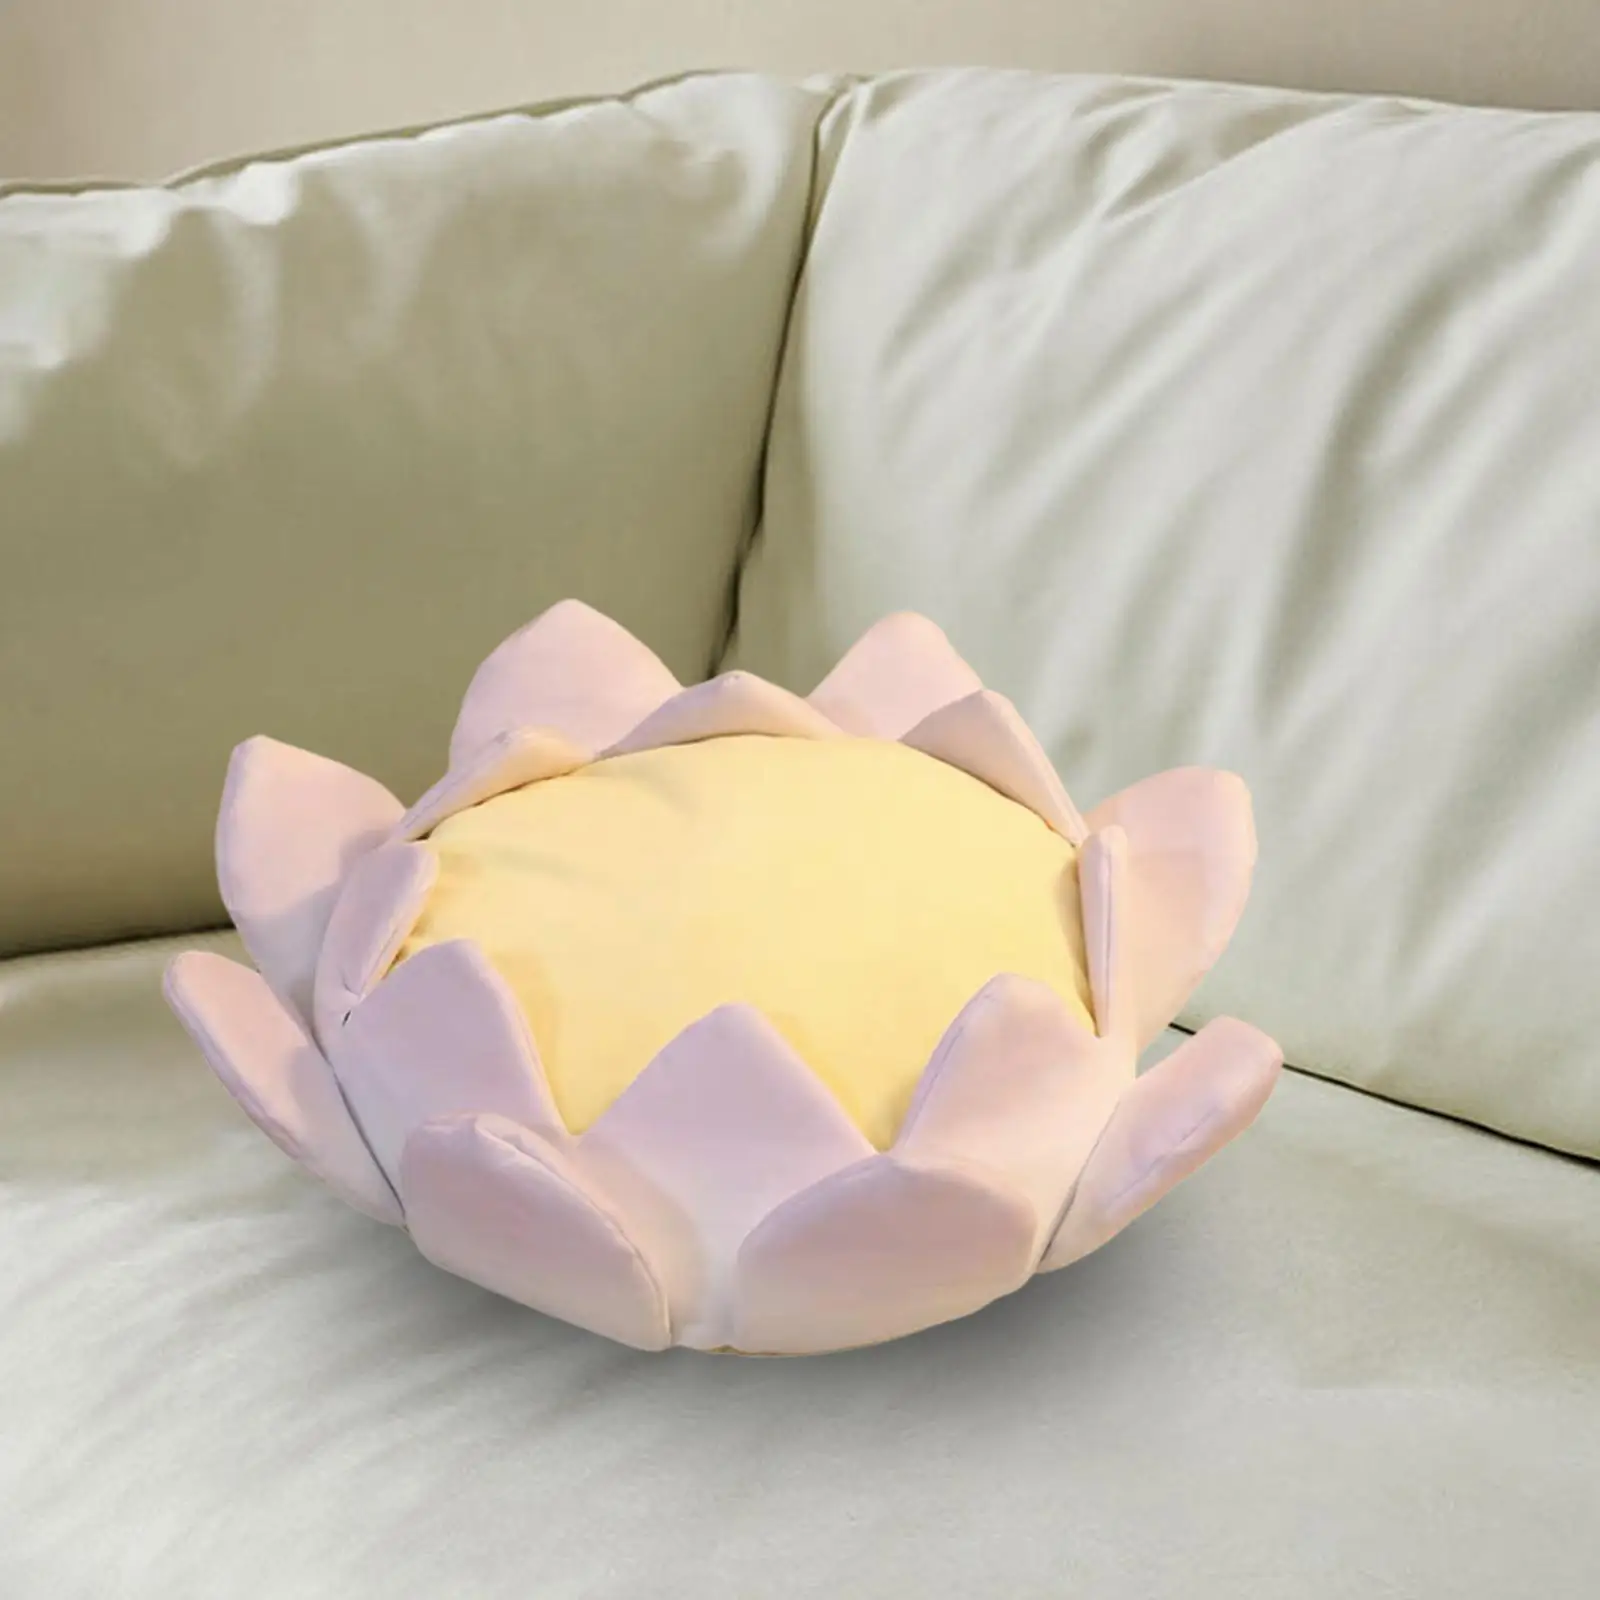 Lotus Cushion Soft Plush Women Lotus Throne for Living Room Yoga